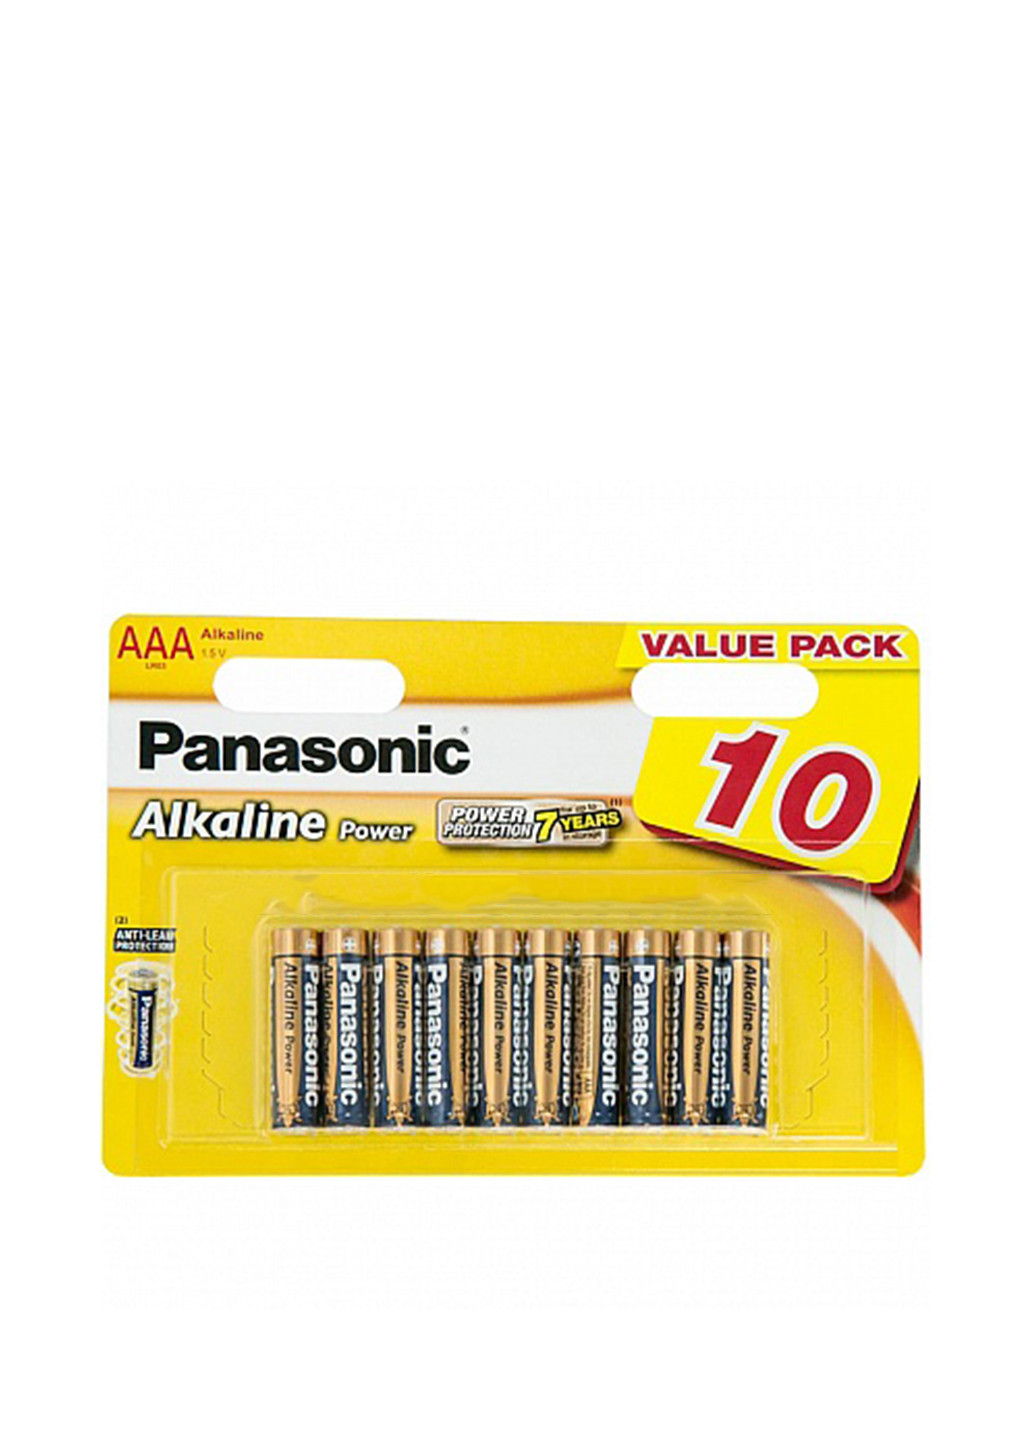 Батарейка ALKALINE POWER AAA BLI 10 (LR03REB / 10BW) Panasonic alkaline power aaa bli 10 (lr03reb/10bw) (138004396)